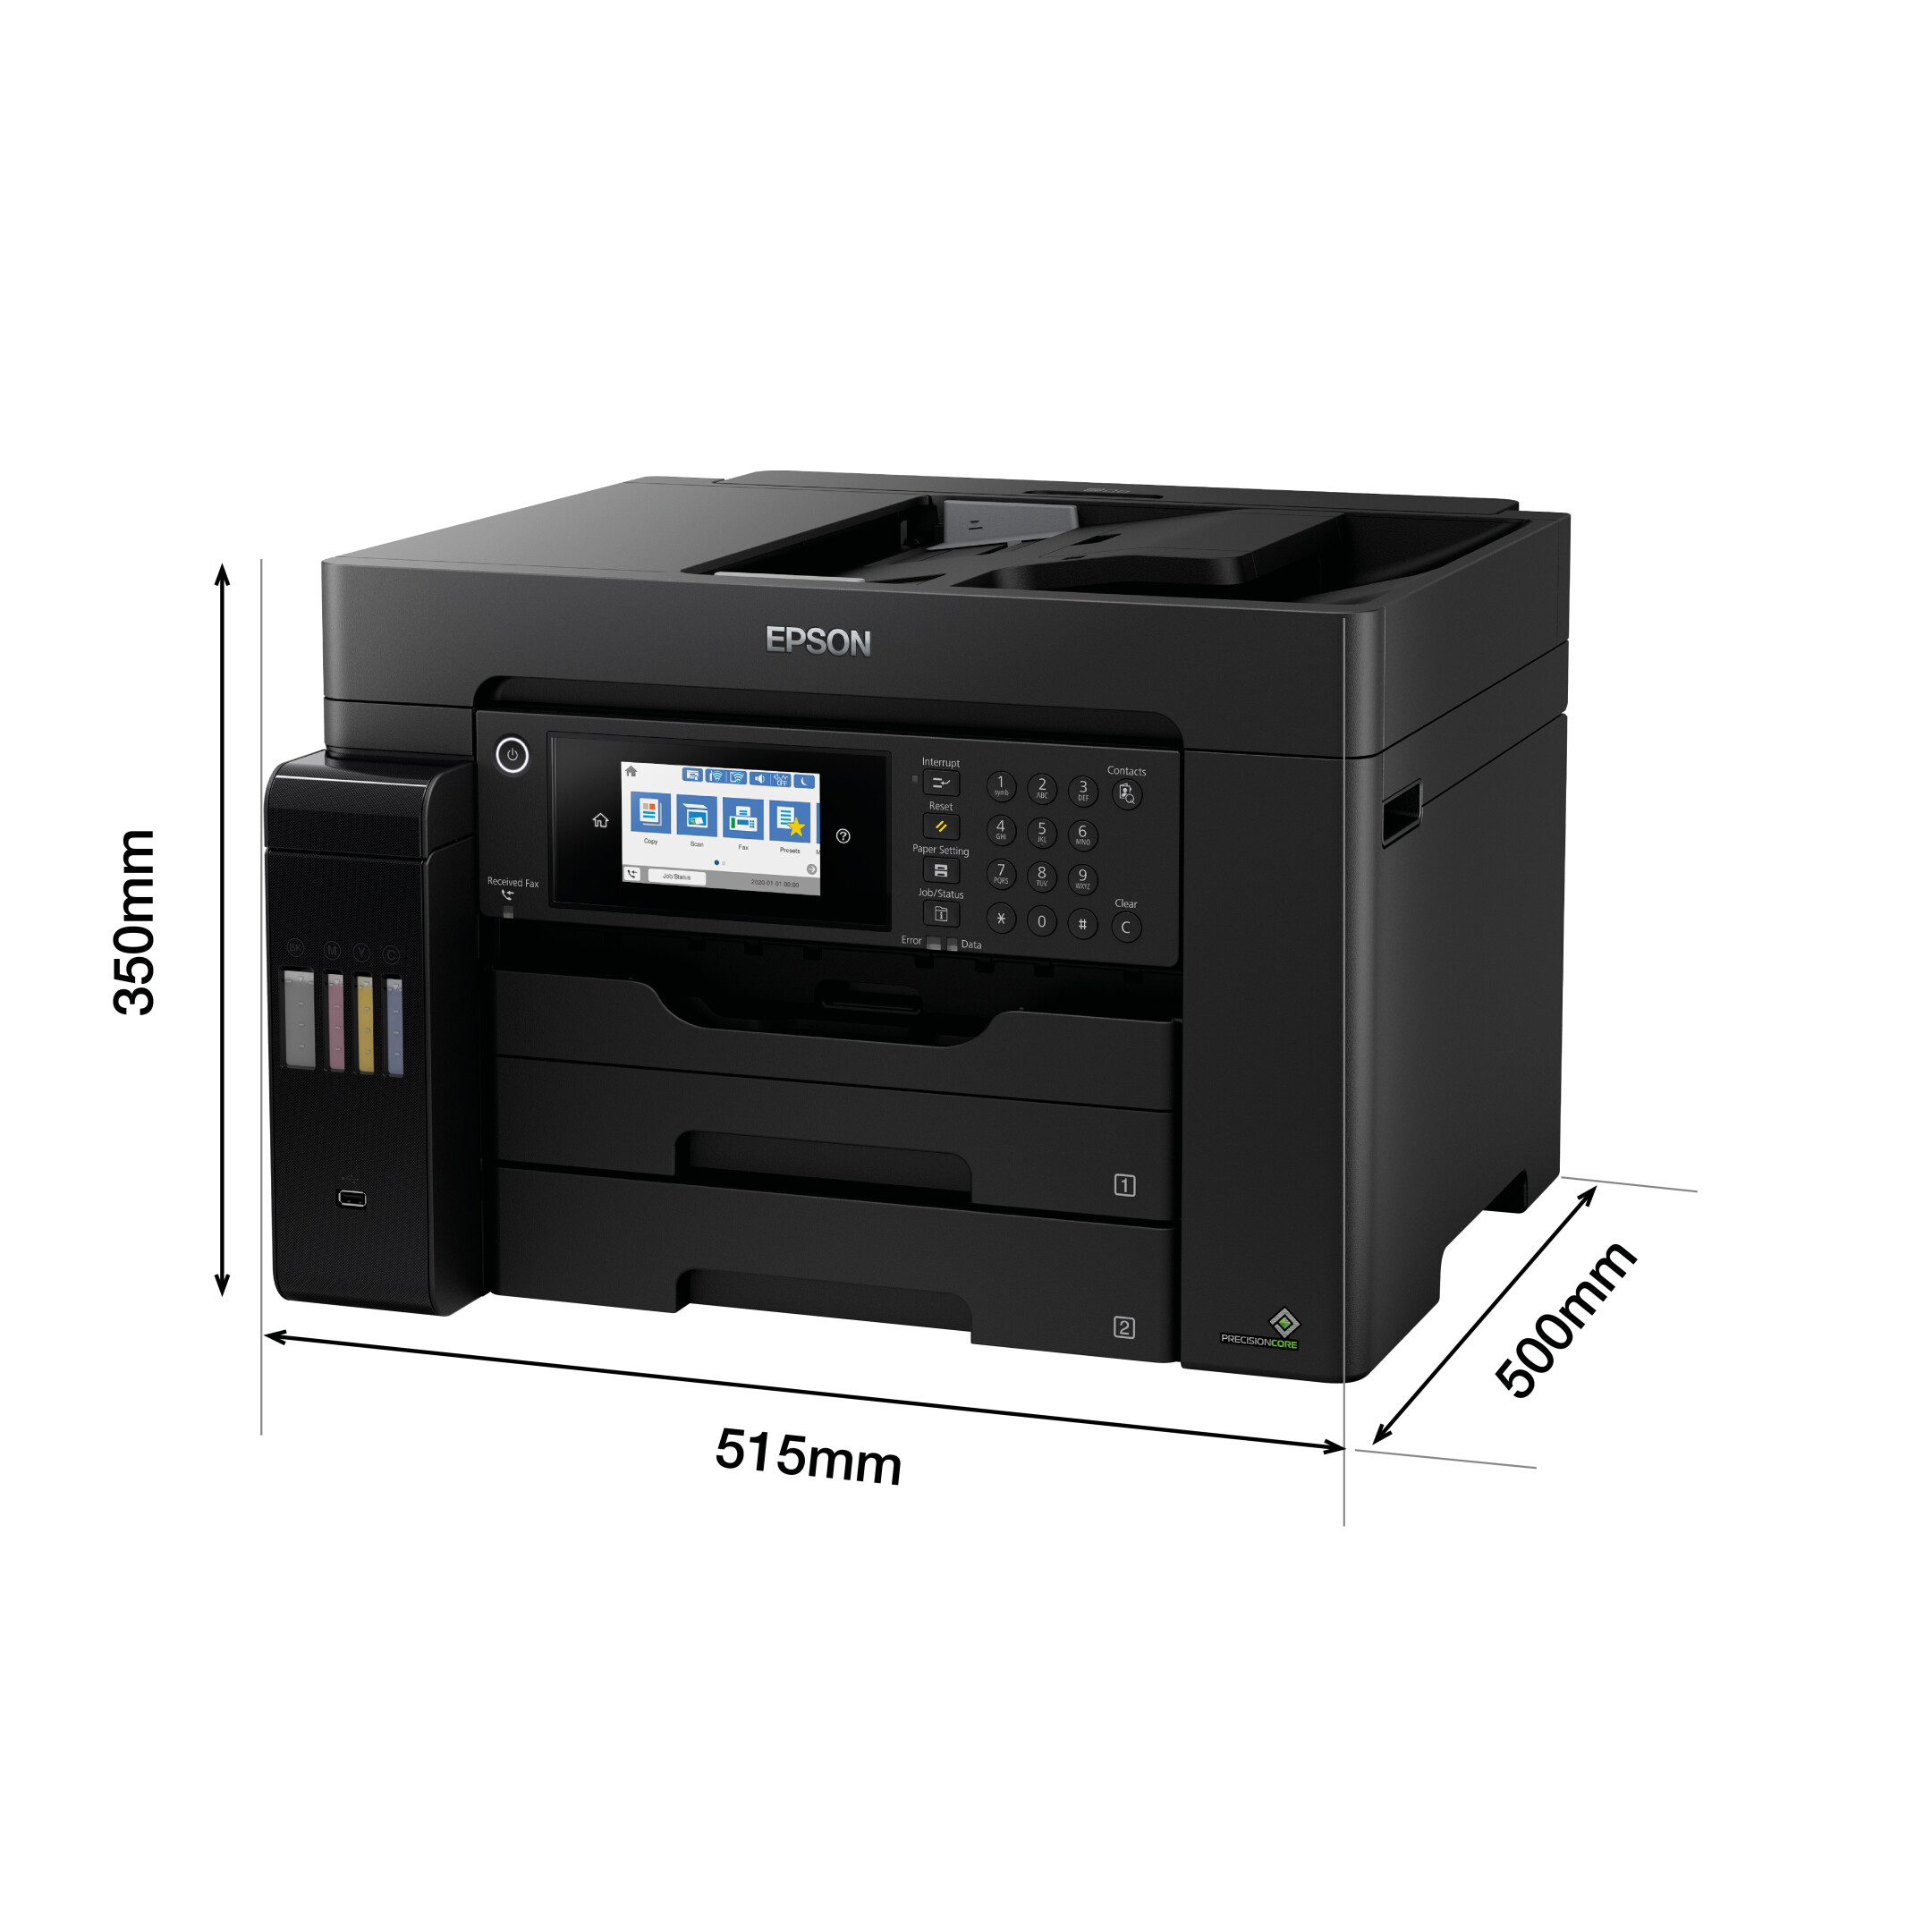 Epson-ET-16650-Ecotank-Printer